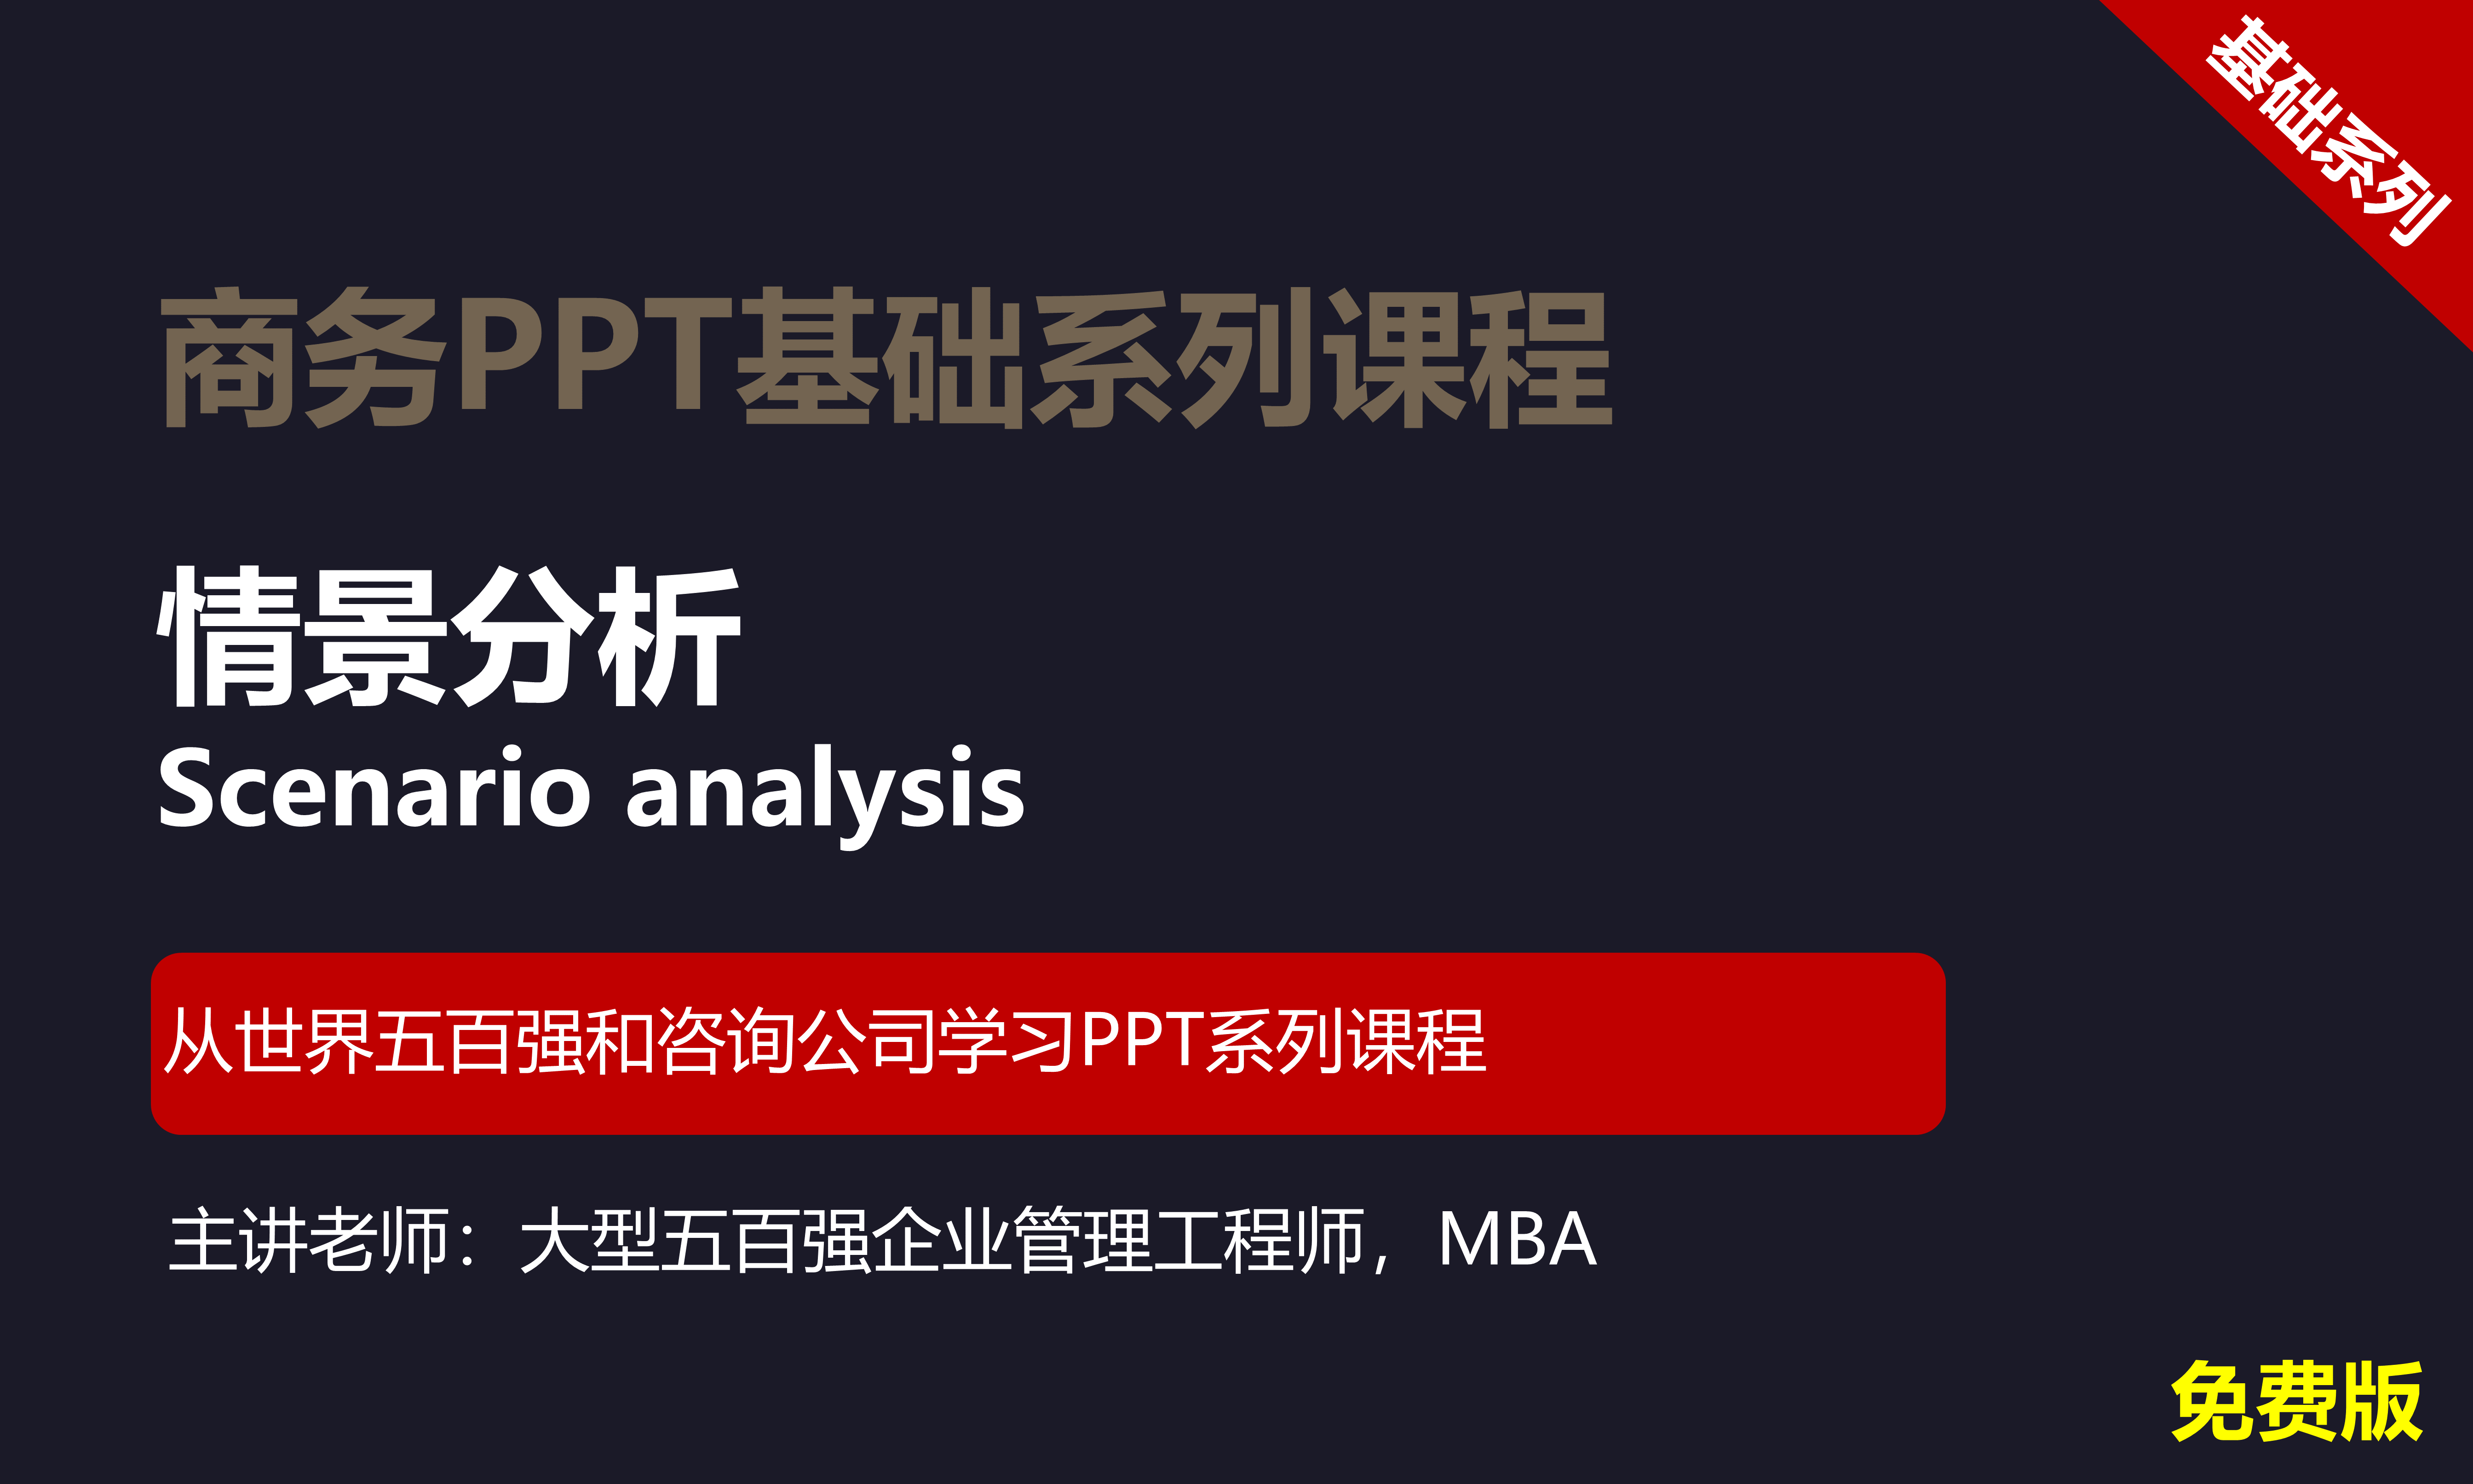 【司马懿】商务PPT设计基础篇01【情景分析】免费版